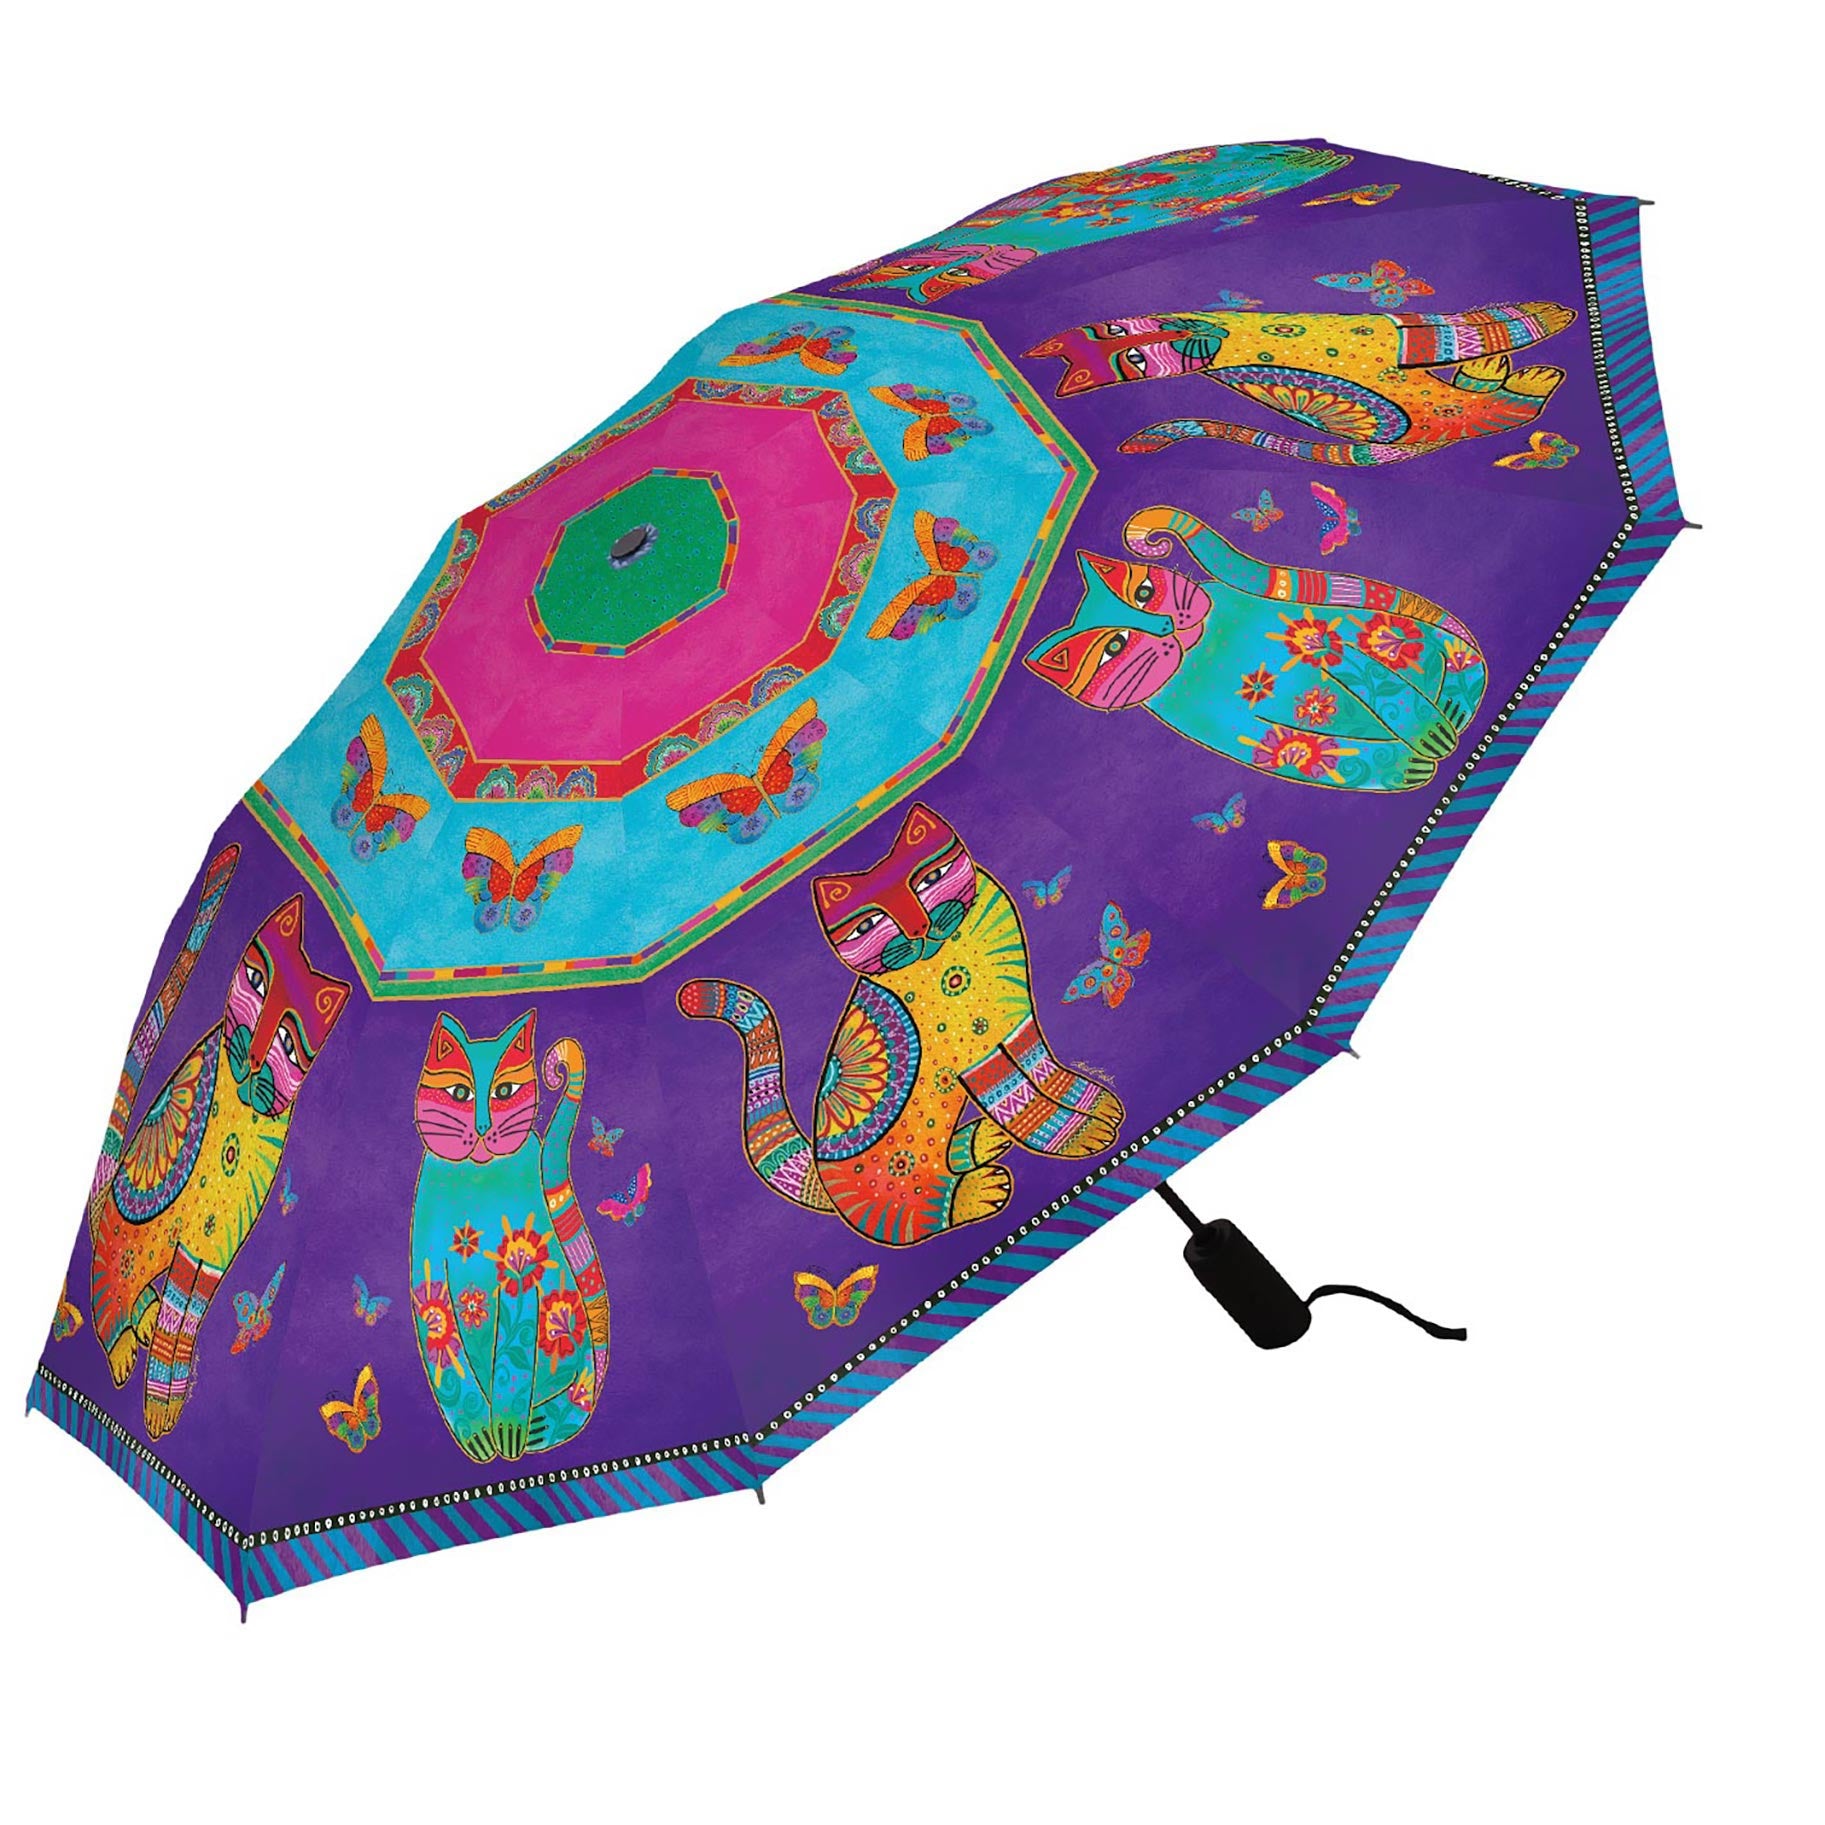 Laurel Burch Cats & Butterflies Folding Travel Umbrella